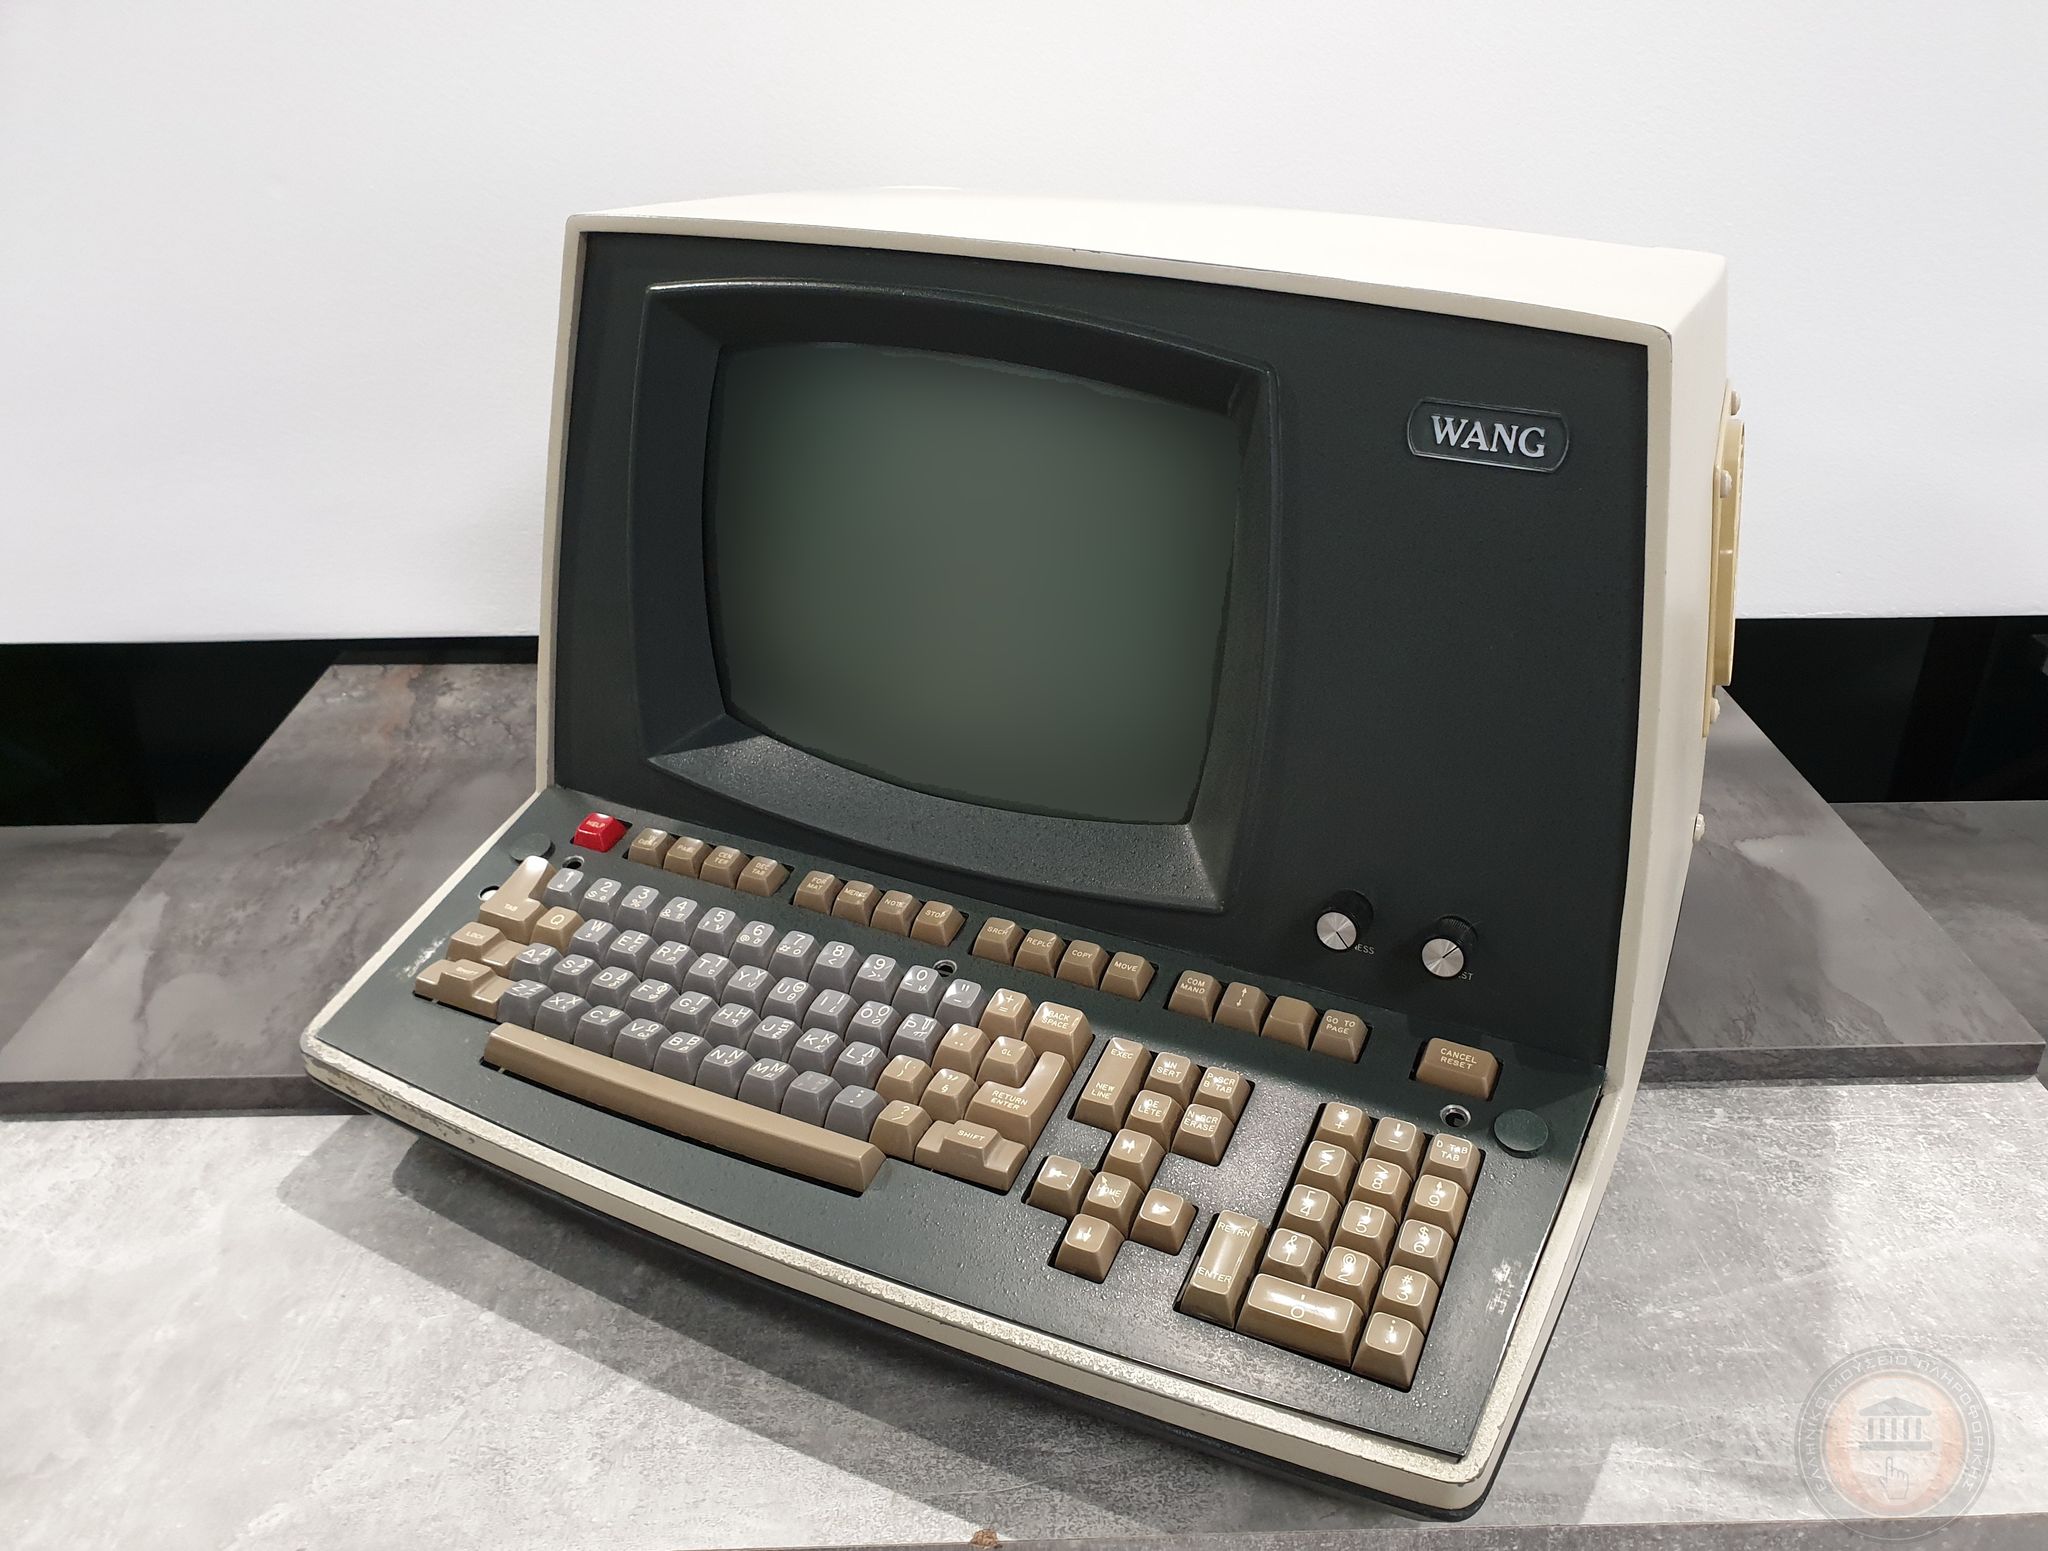 Wang Computer 2246-C